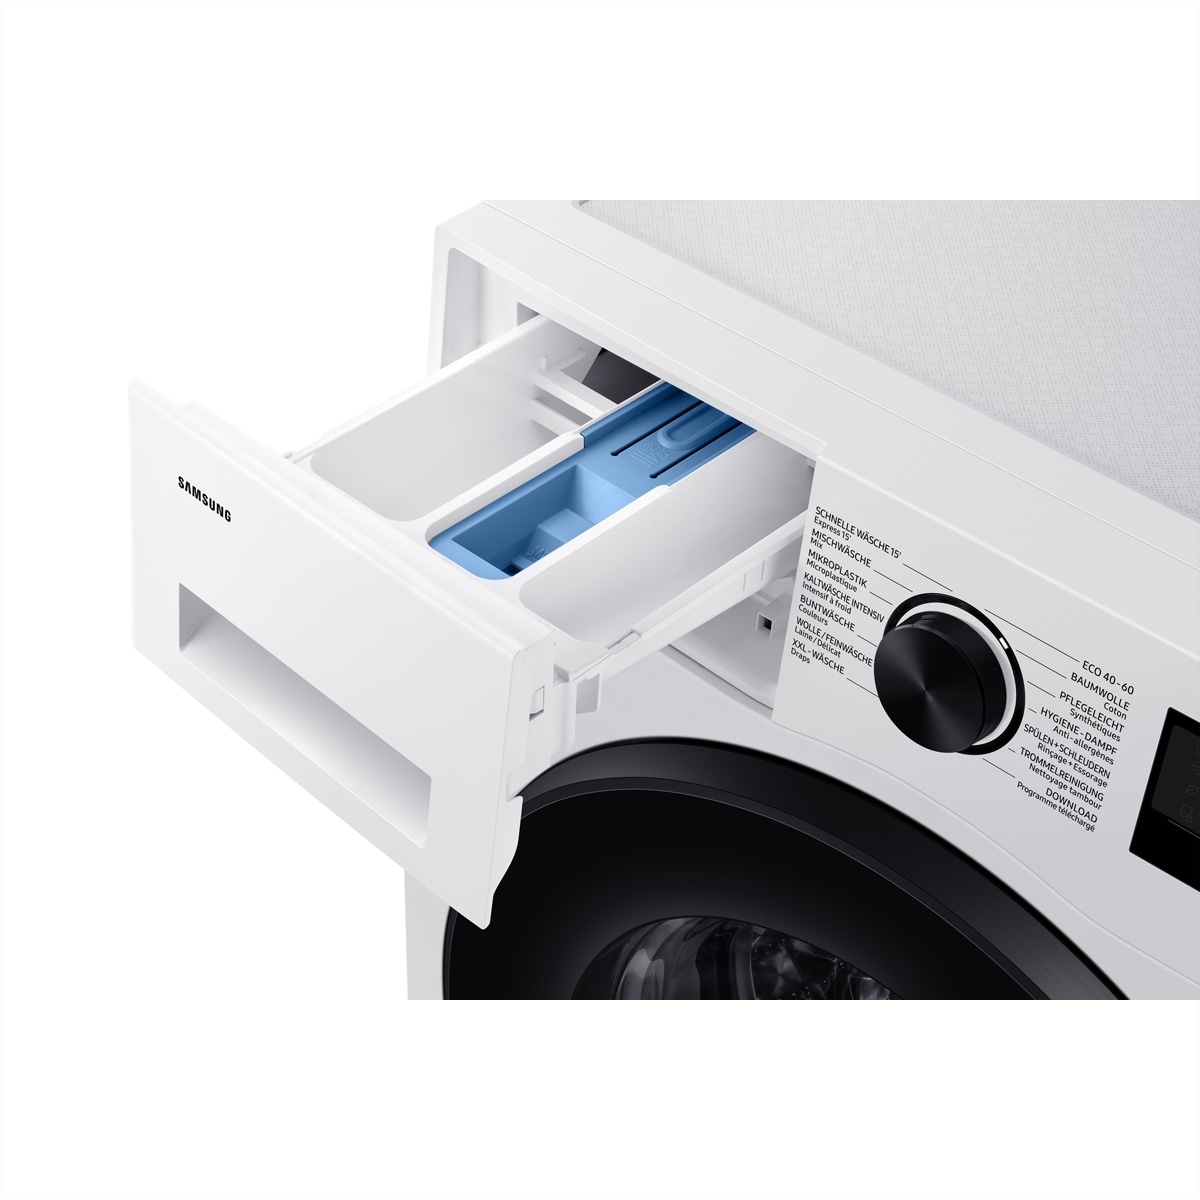 Samsung Waschmaschine »Samsung Waschmaschine WW5000, 8kg, A, Carved«, WW5000